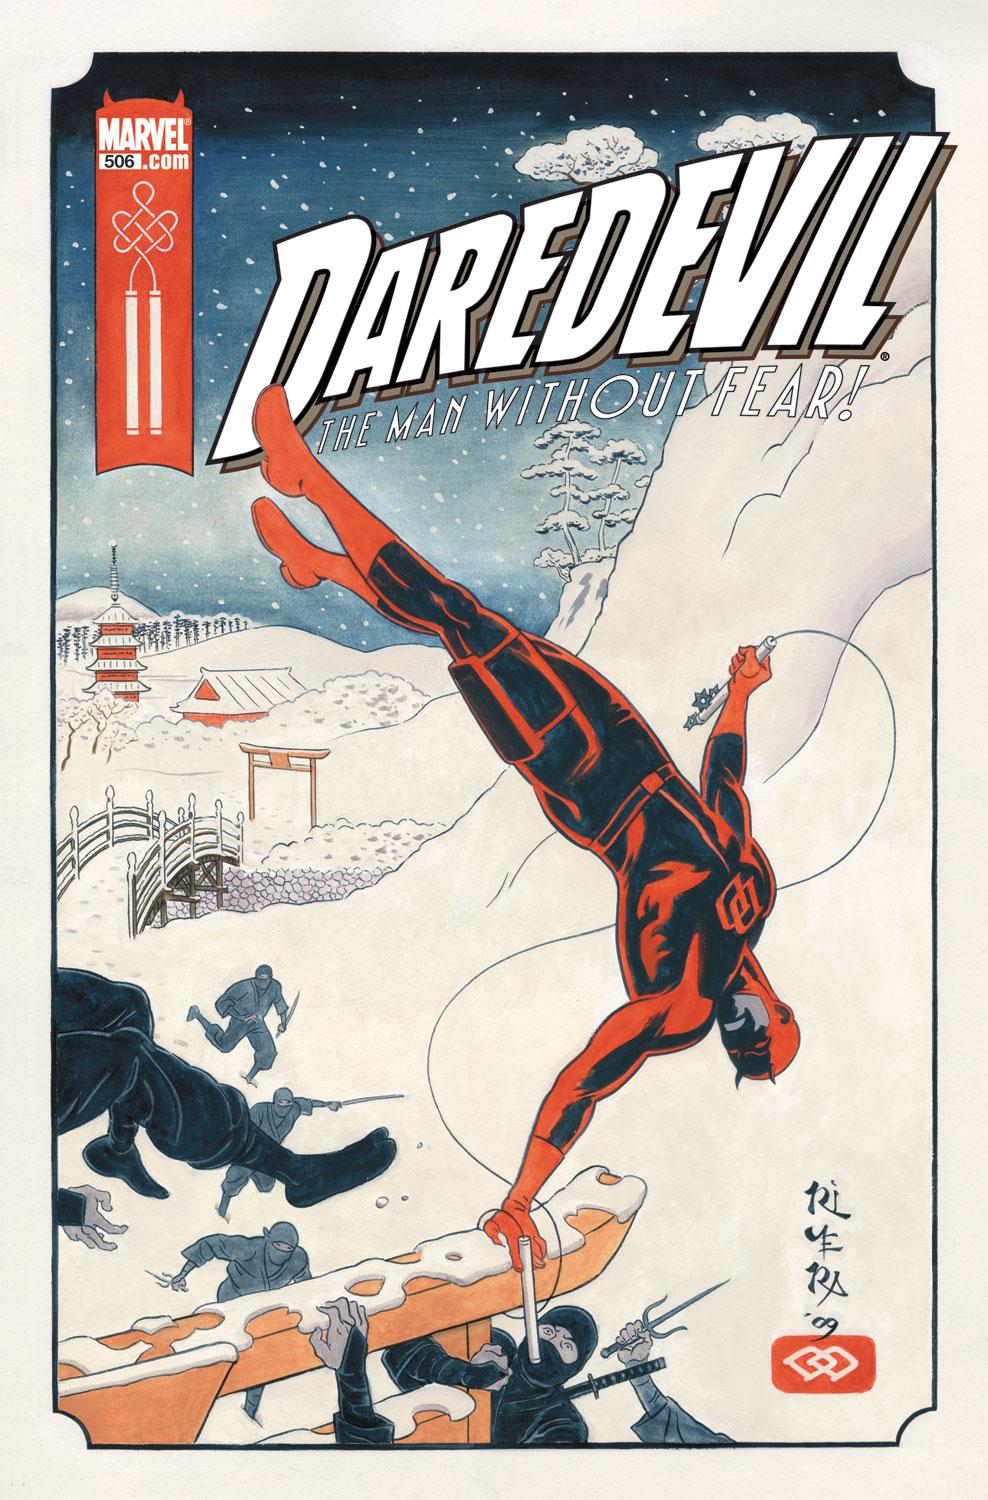 Daredevil (1998) #506